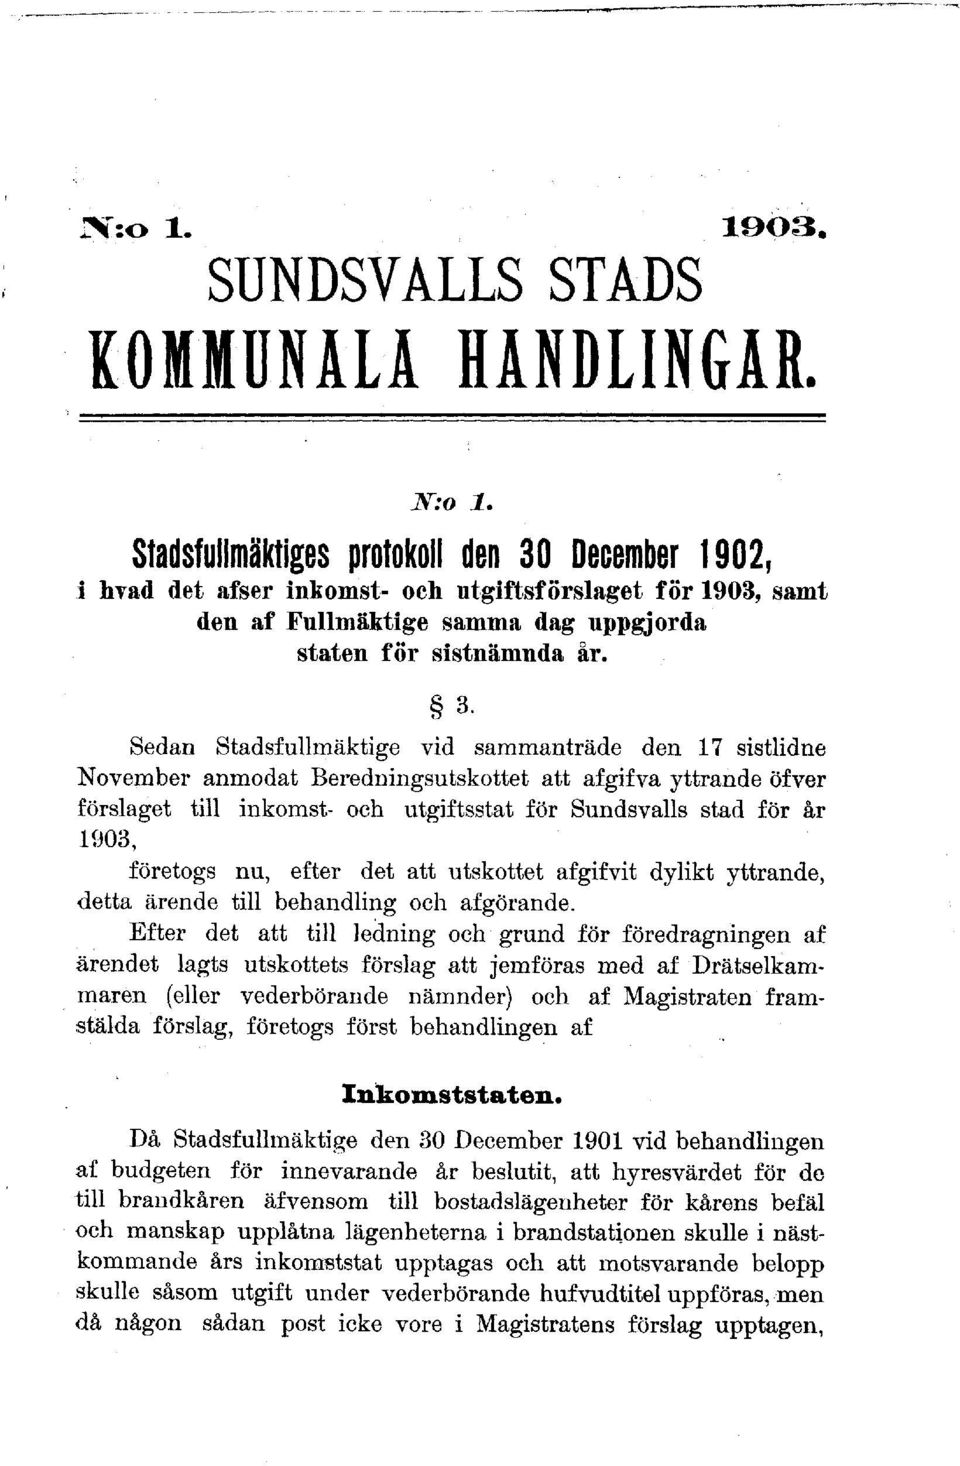 December 1902, i hvad det afser inkomst- och utgiftsförslaget för 1903, samt den af Fullmäktige samma dag uppgjorda staten för sistnämnda år. 3.